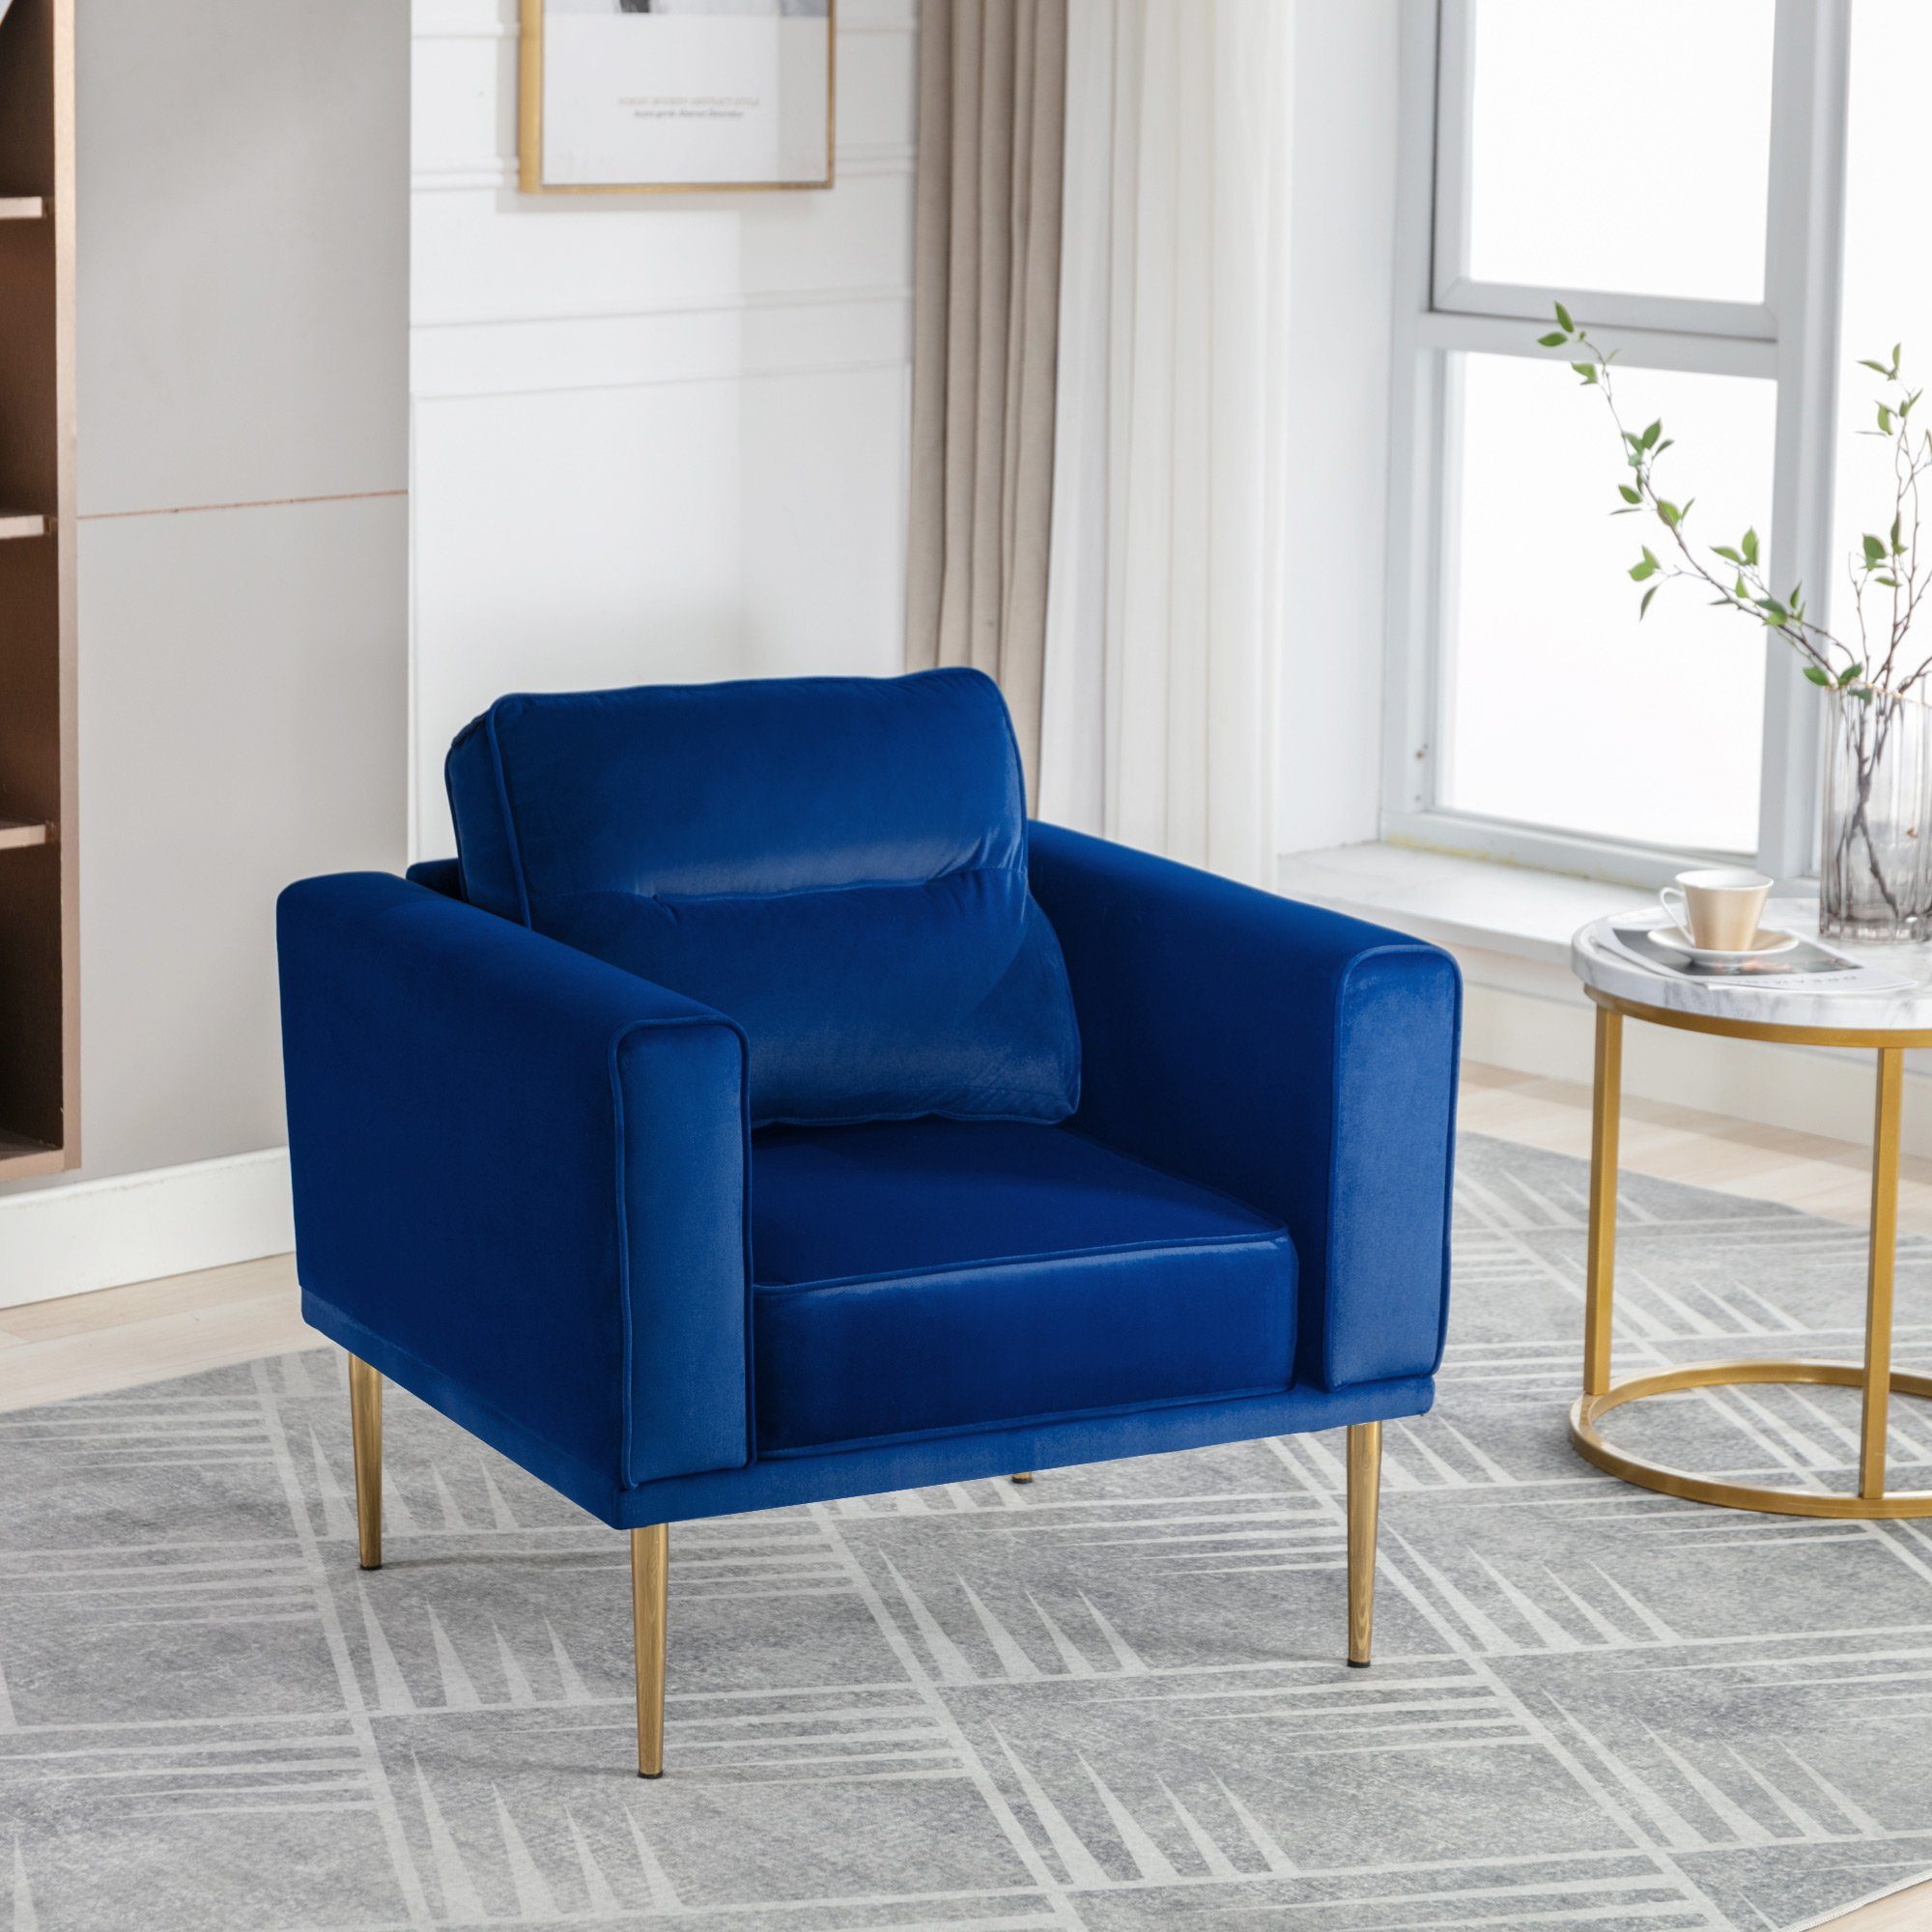 OKWISH Sessel Fernsehsessel, Loungesessel, blau Samtstuhl (lässiger Sessel), mit Sessel Sitzkissen einfacher moderner Roségold-Metallbeine, und Polster